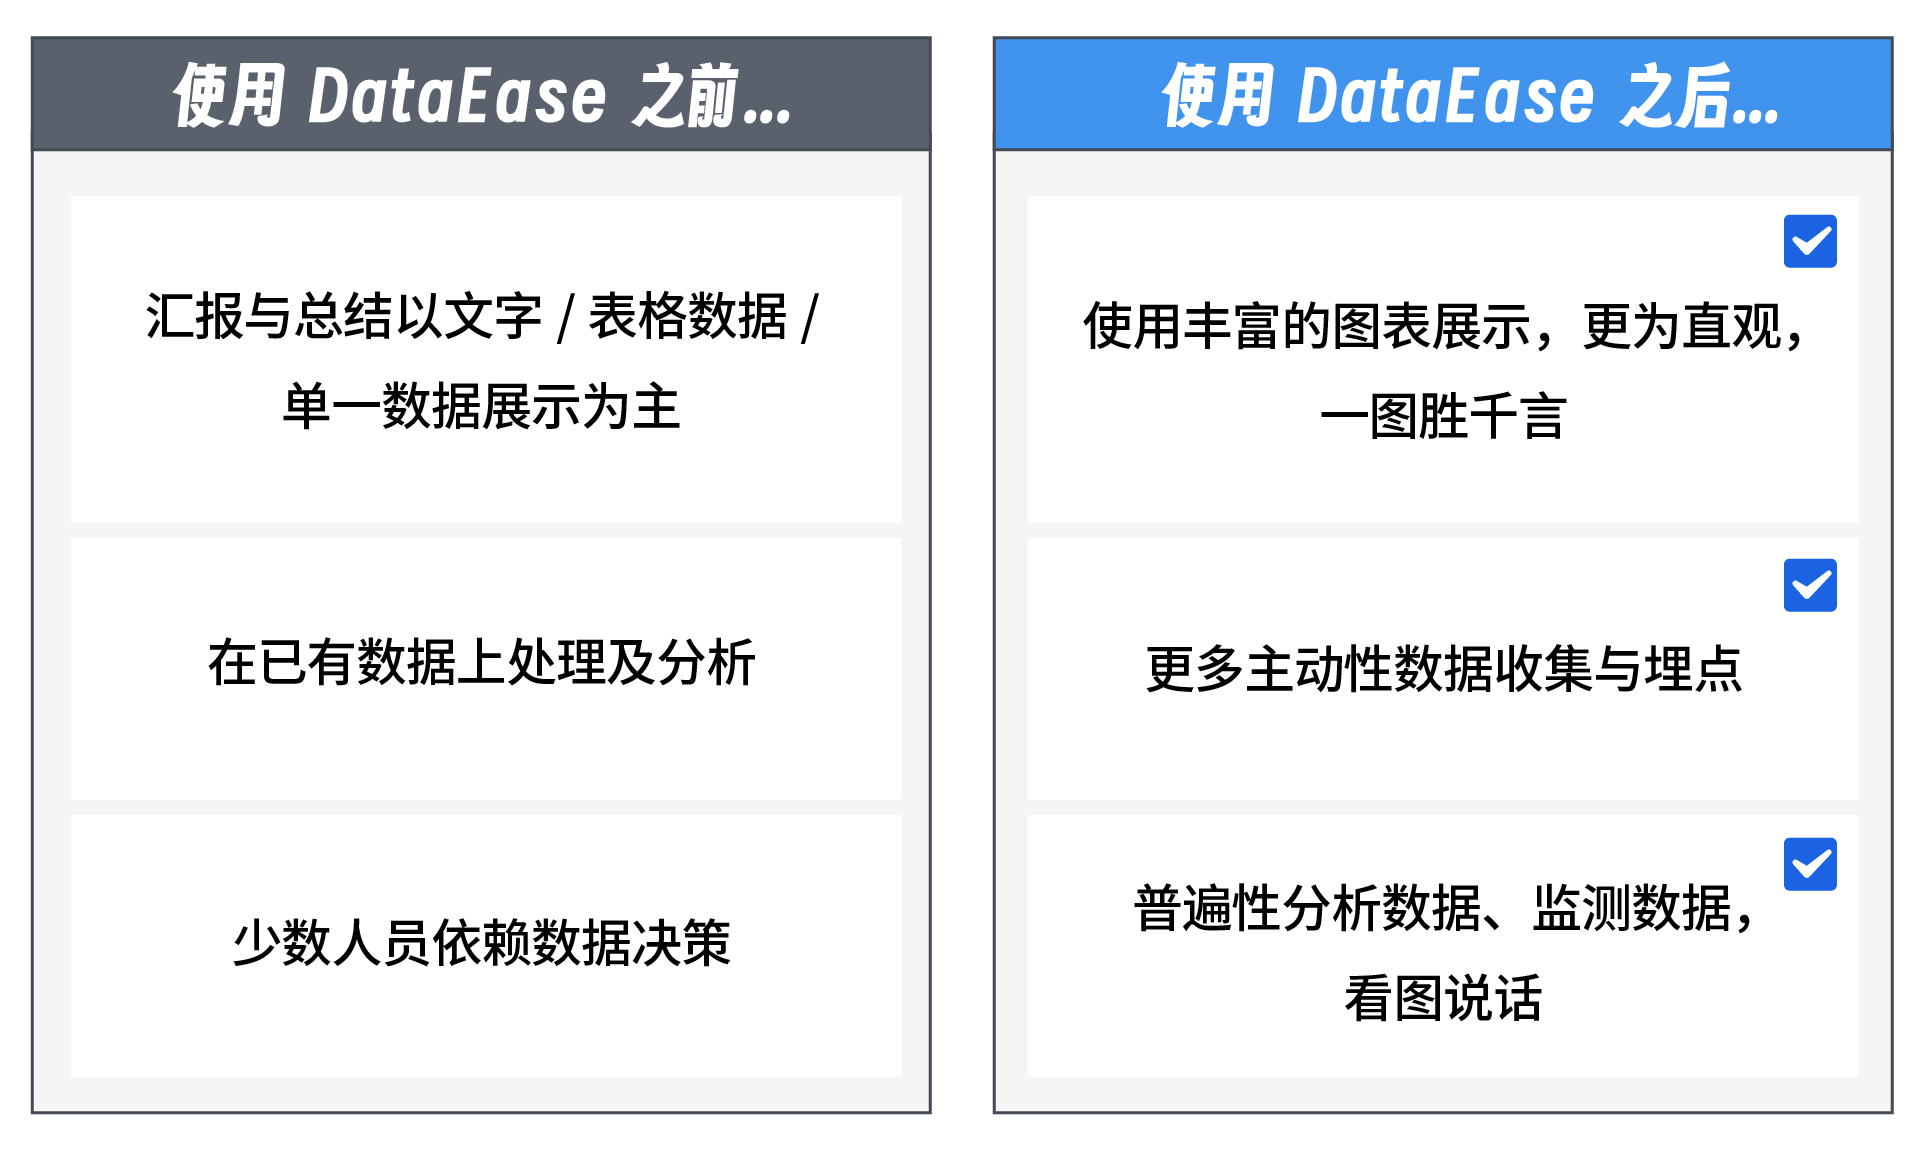 11 【插图】作为一家BI厂商，飞致云是如何人人使用DataEase的？3.jpg